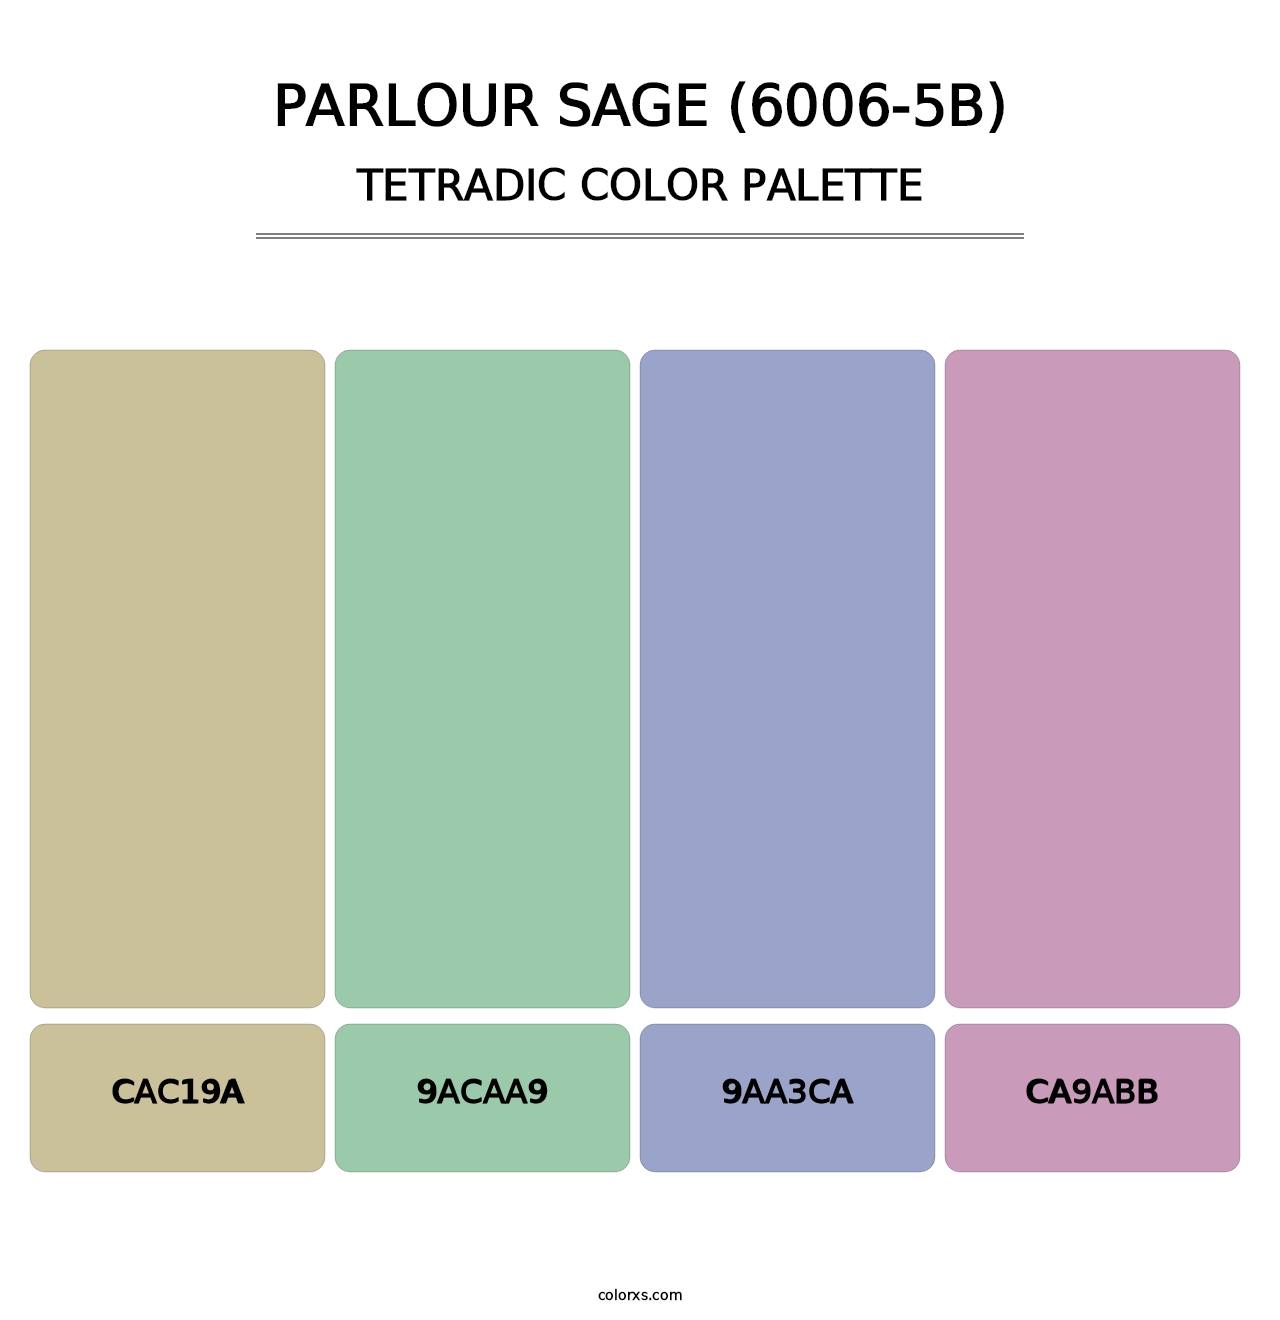 Parlour Sage (6006-5B) - Tetradic Color Palette